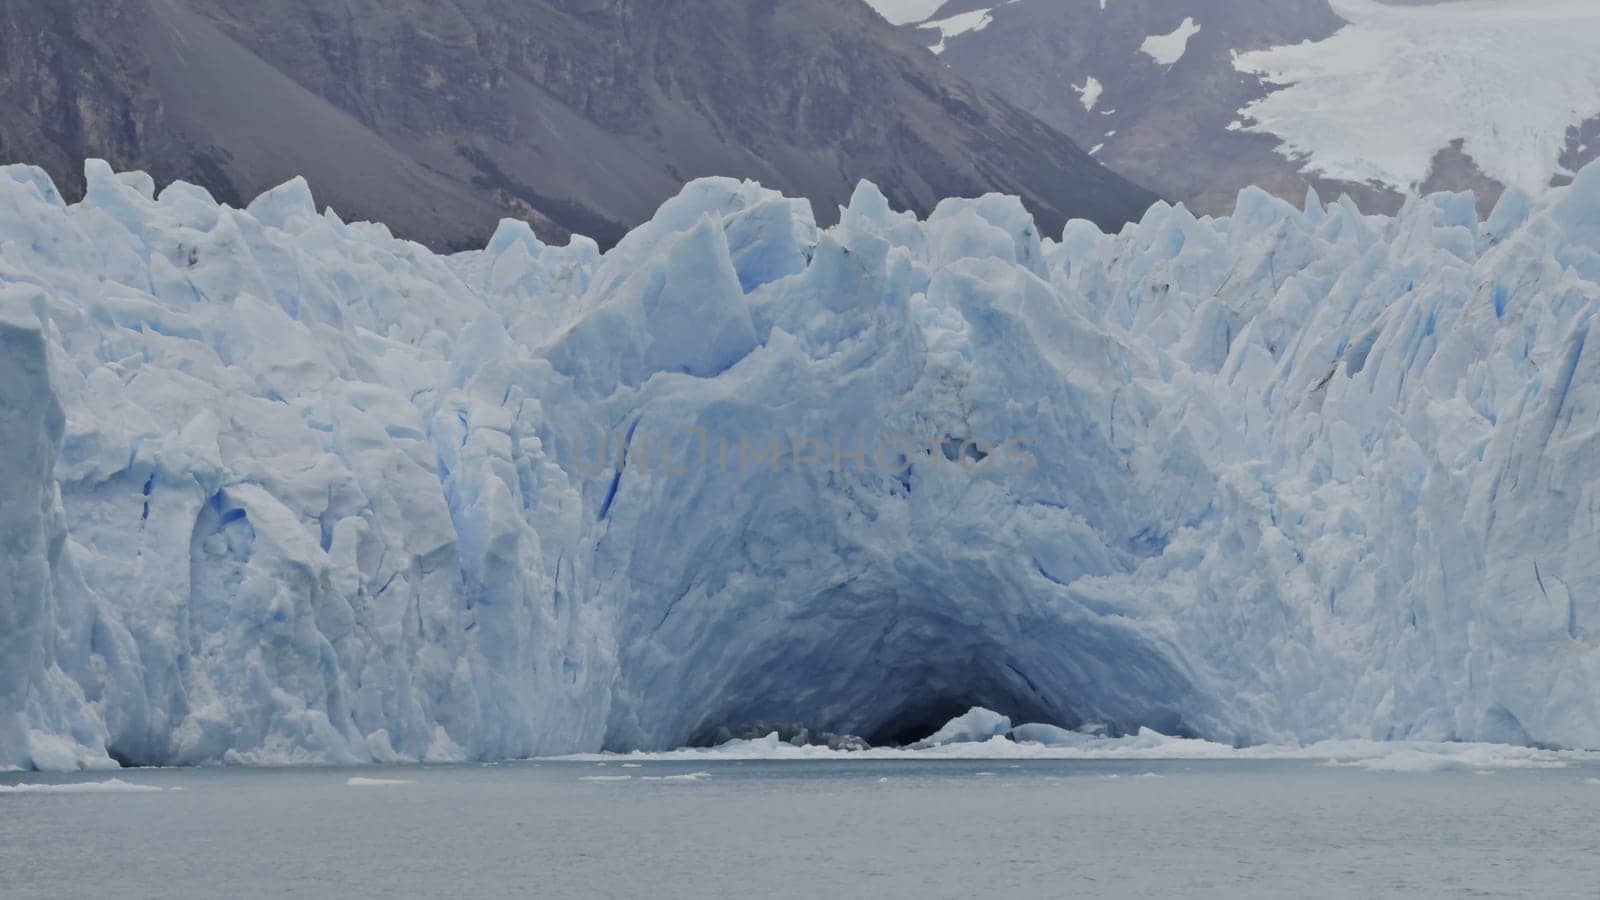 Majestic Perito Moreno Glacier with Blue Ice Cave Exploration by FerradalFCG